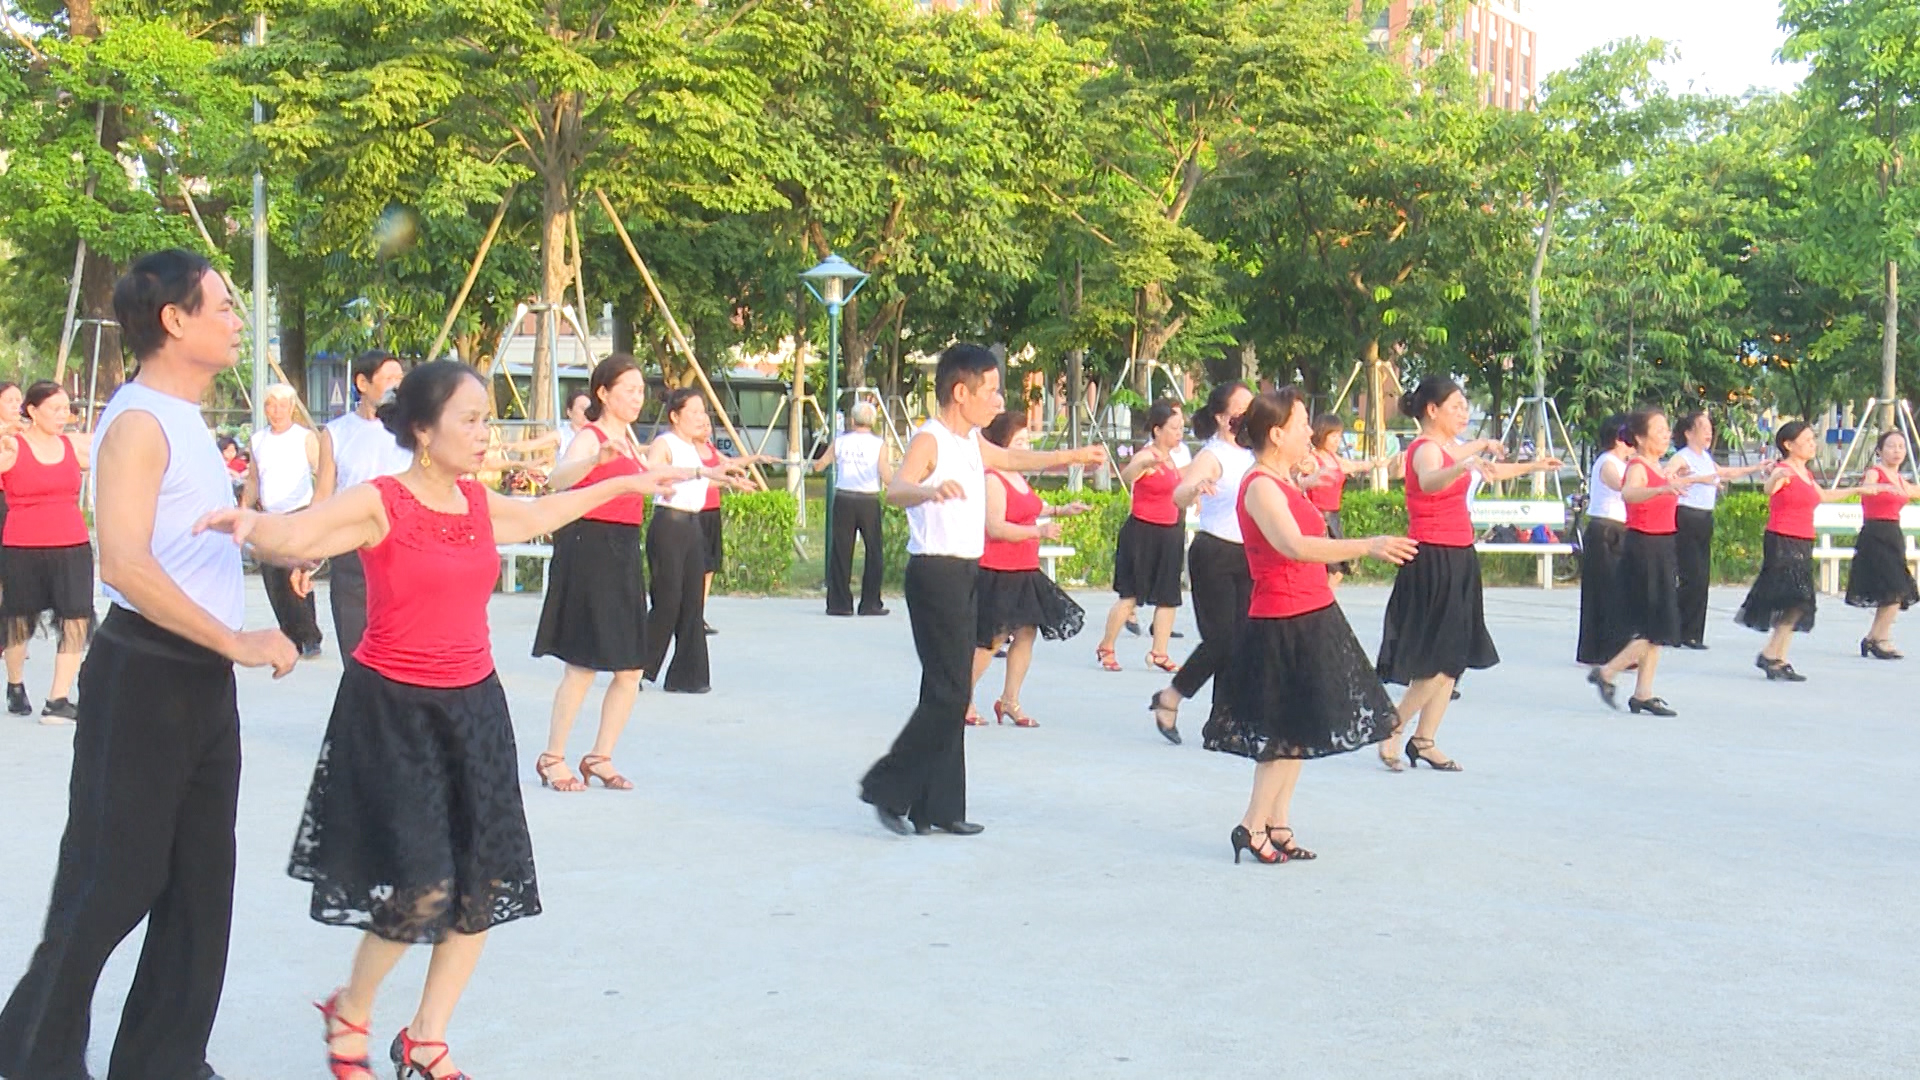 CLB khiêu vũ Minh Phụng hoạt động vì cộng đồng - Đài Phát Thanh và Truyền Hình Thái Bình